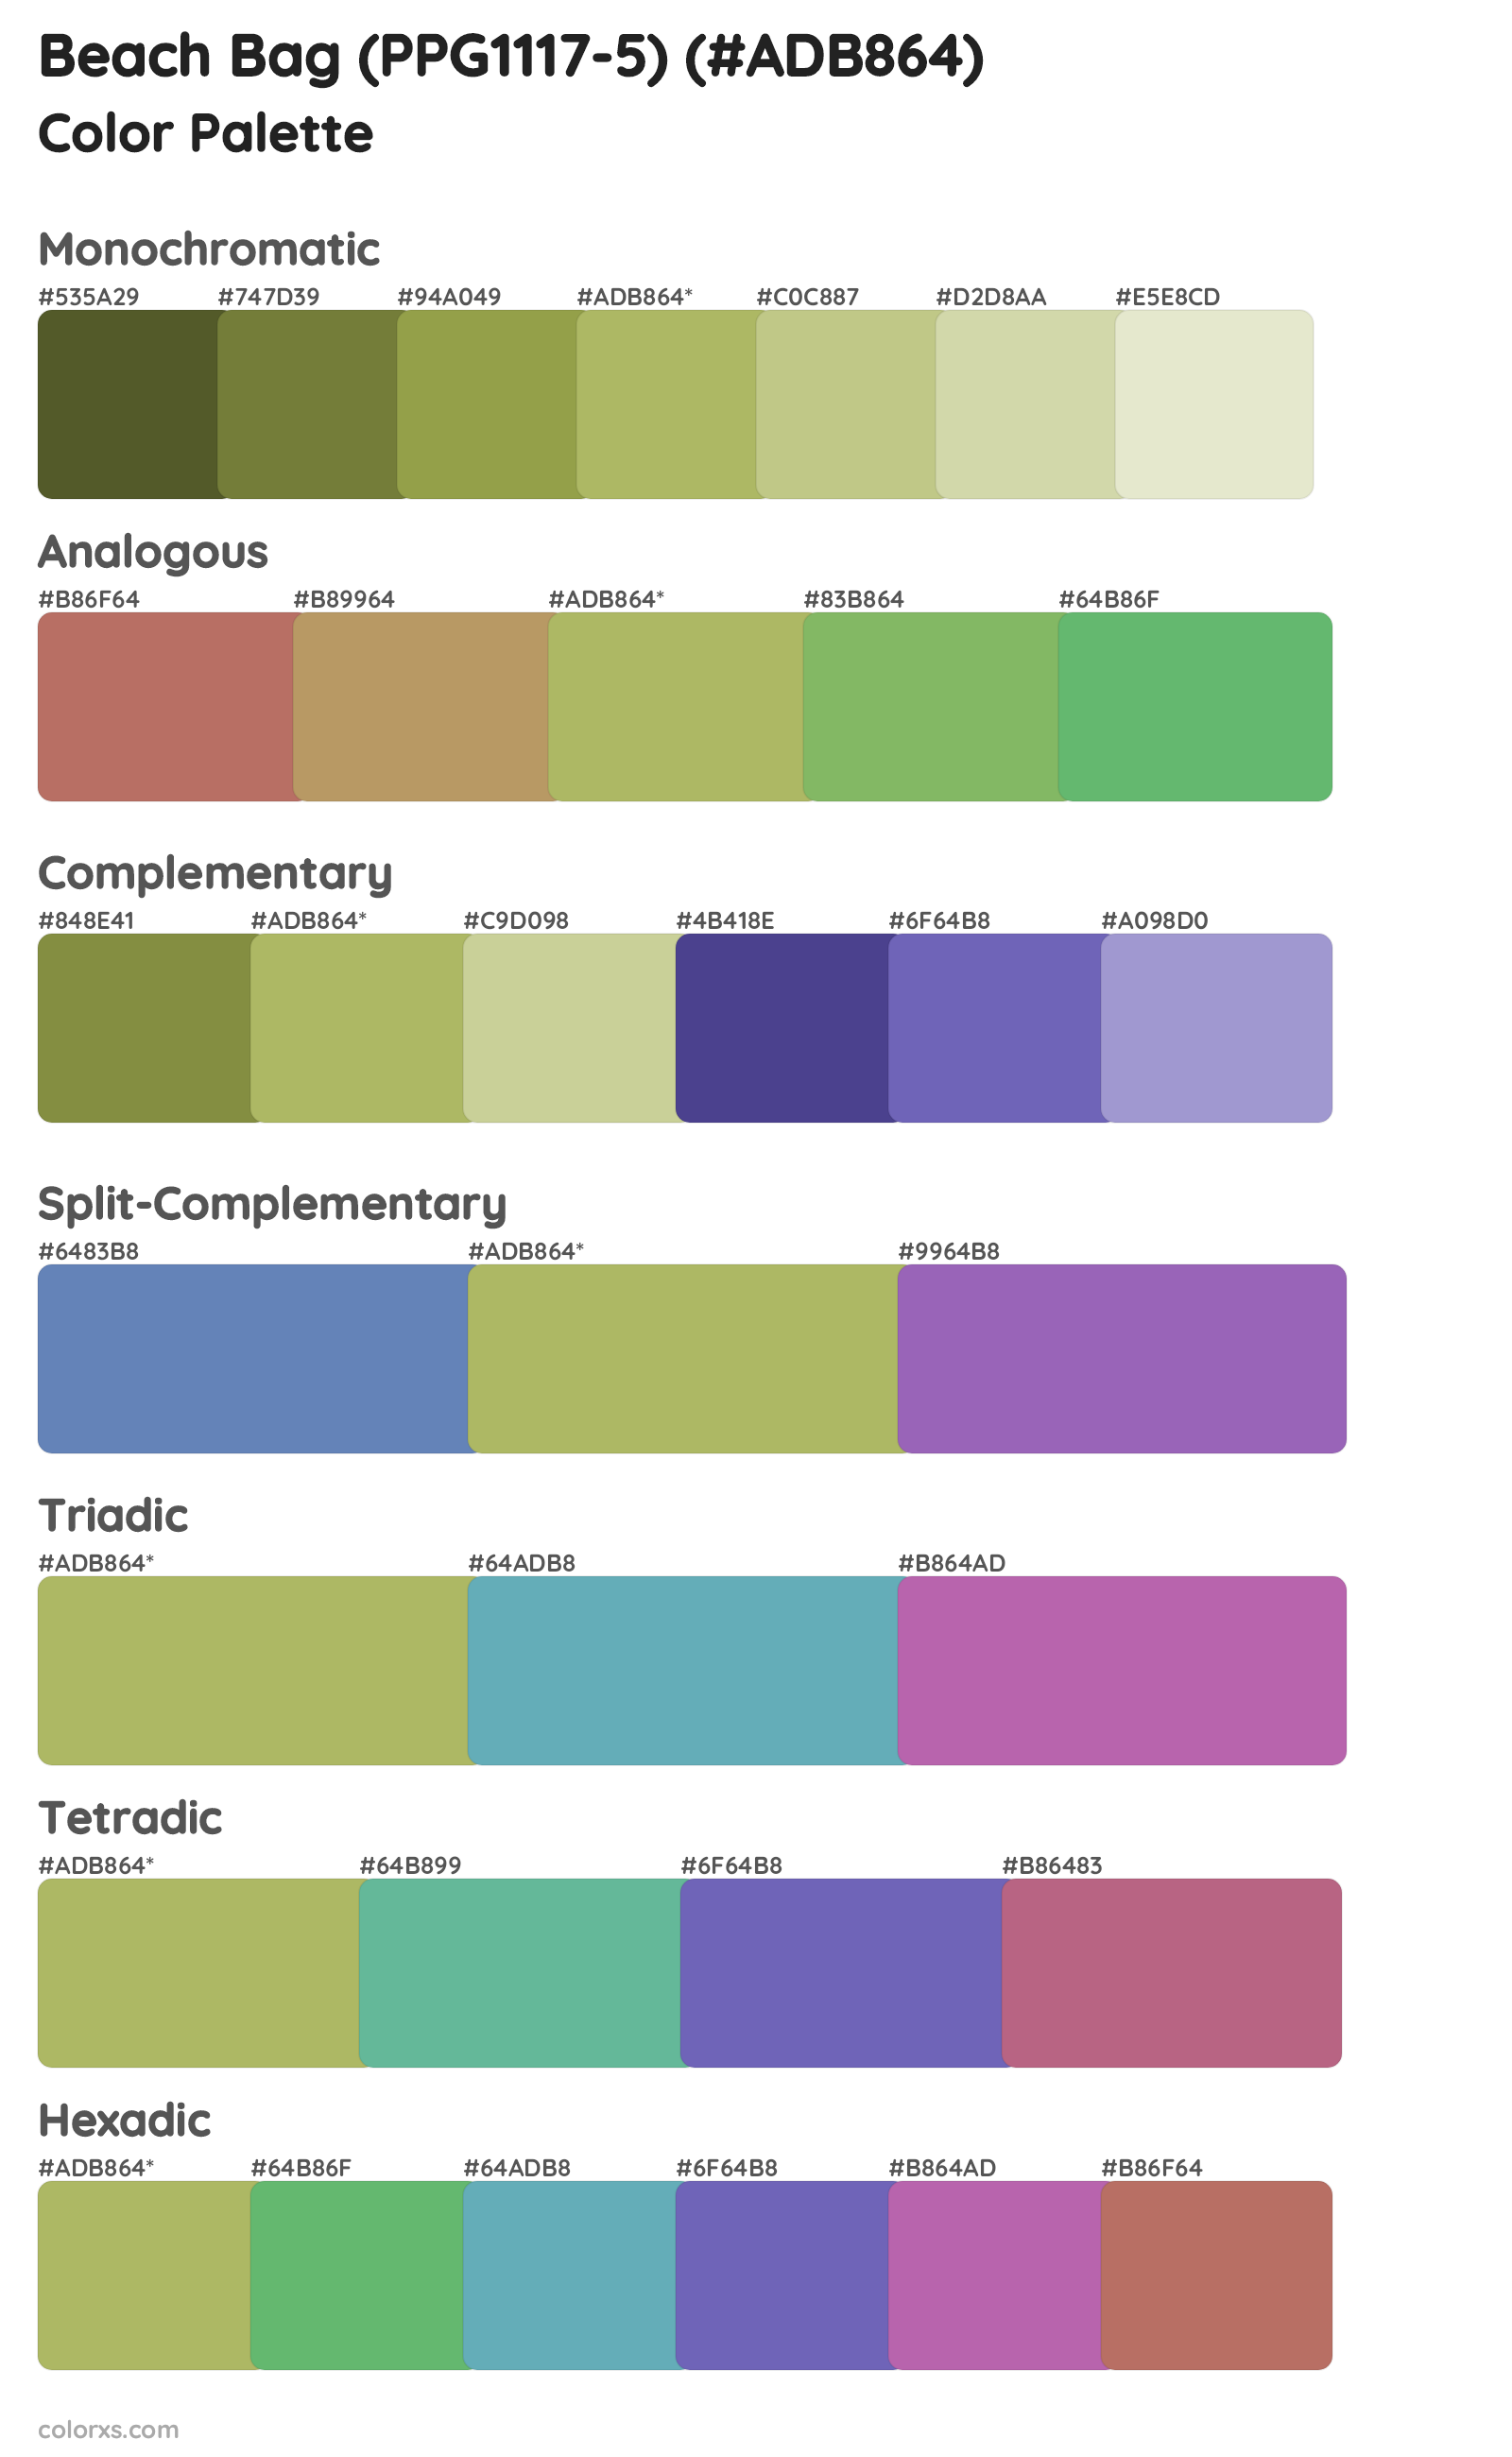 Beach Bag (PPG1117-5) Color Scheme Palettes